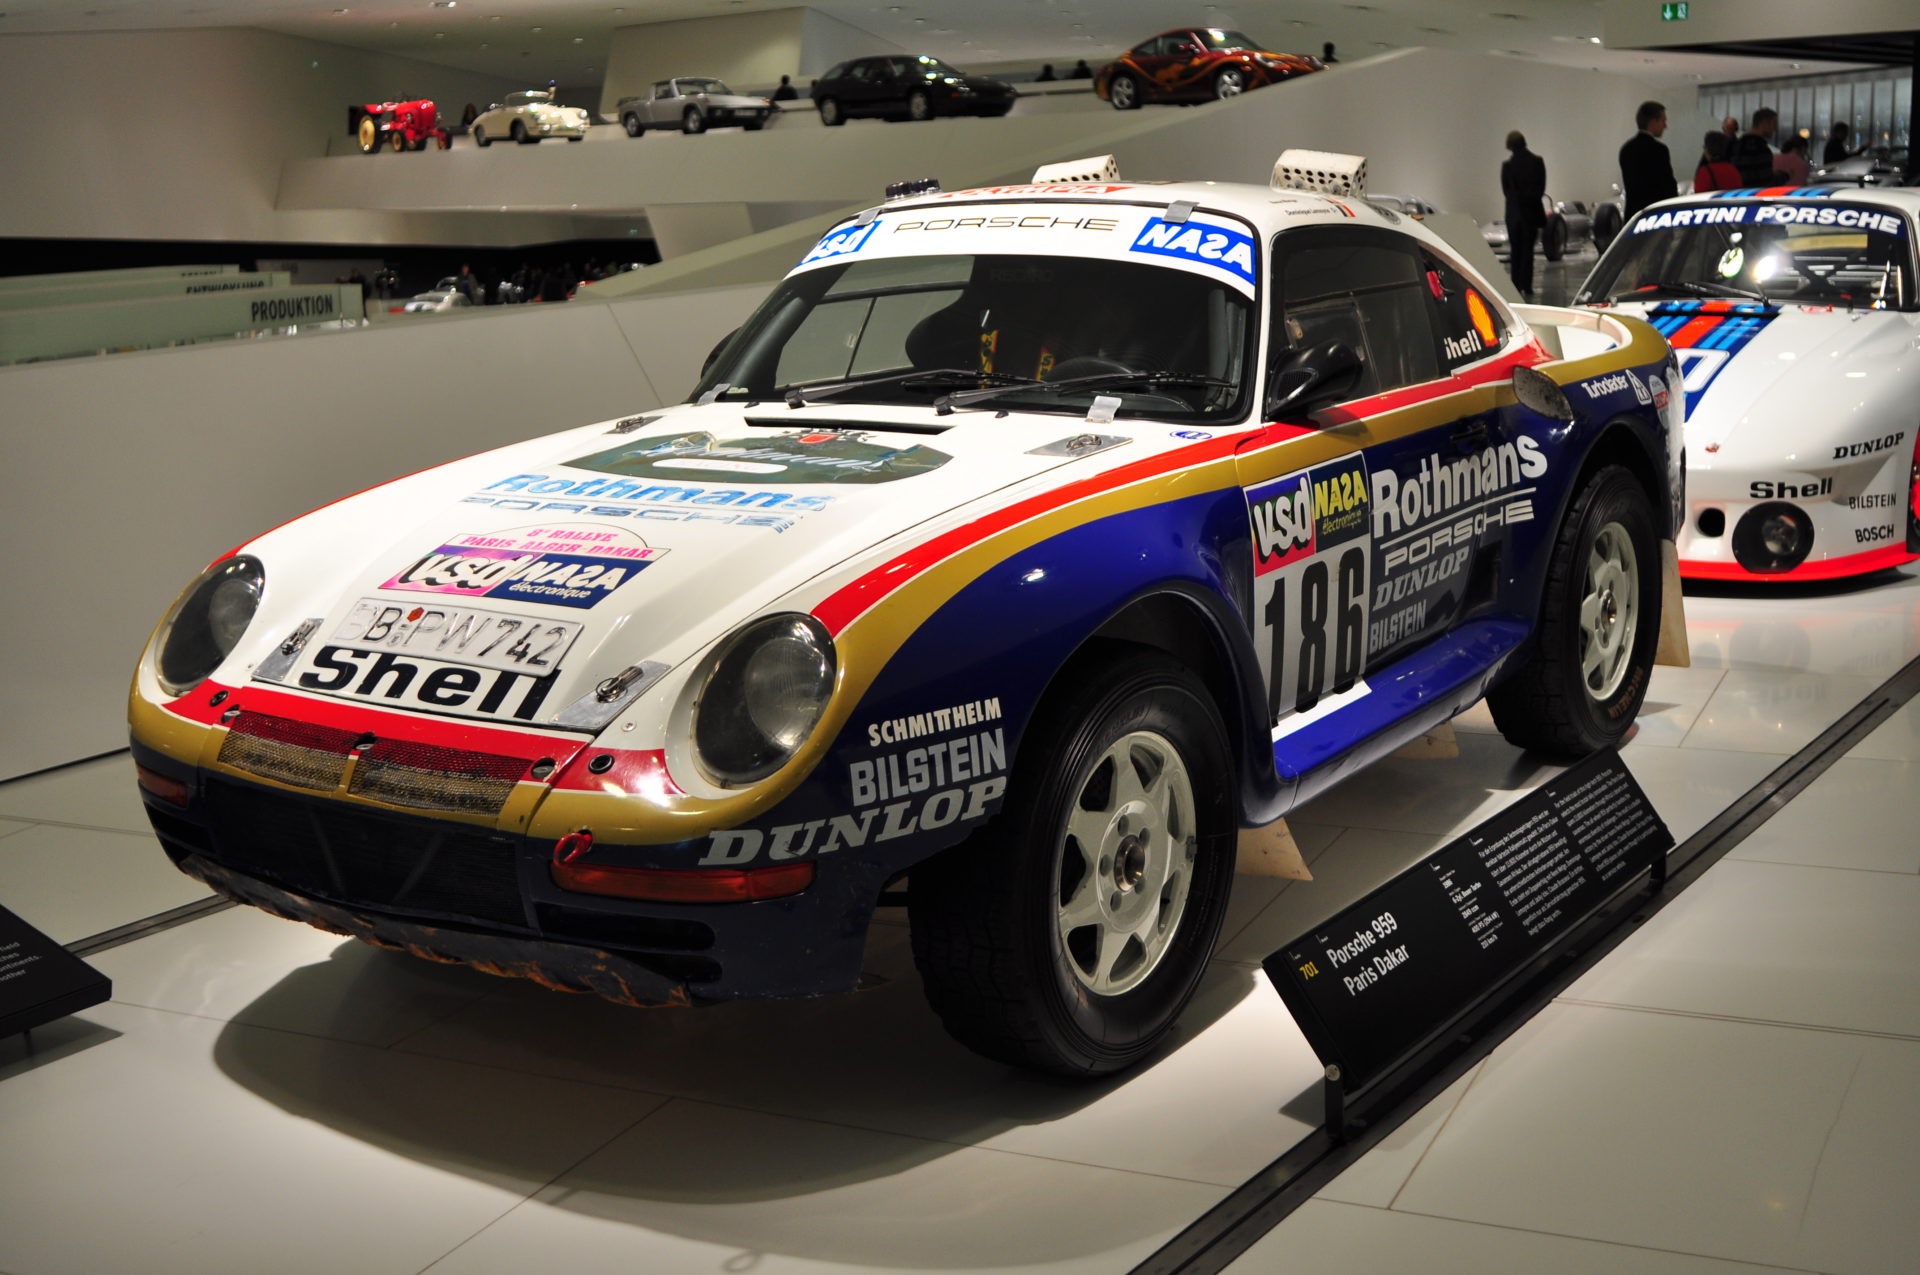 Porsche 959 – Superjens Heavy Industries